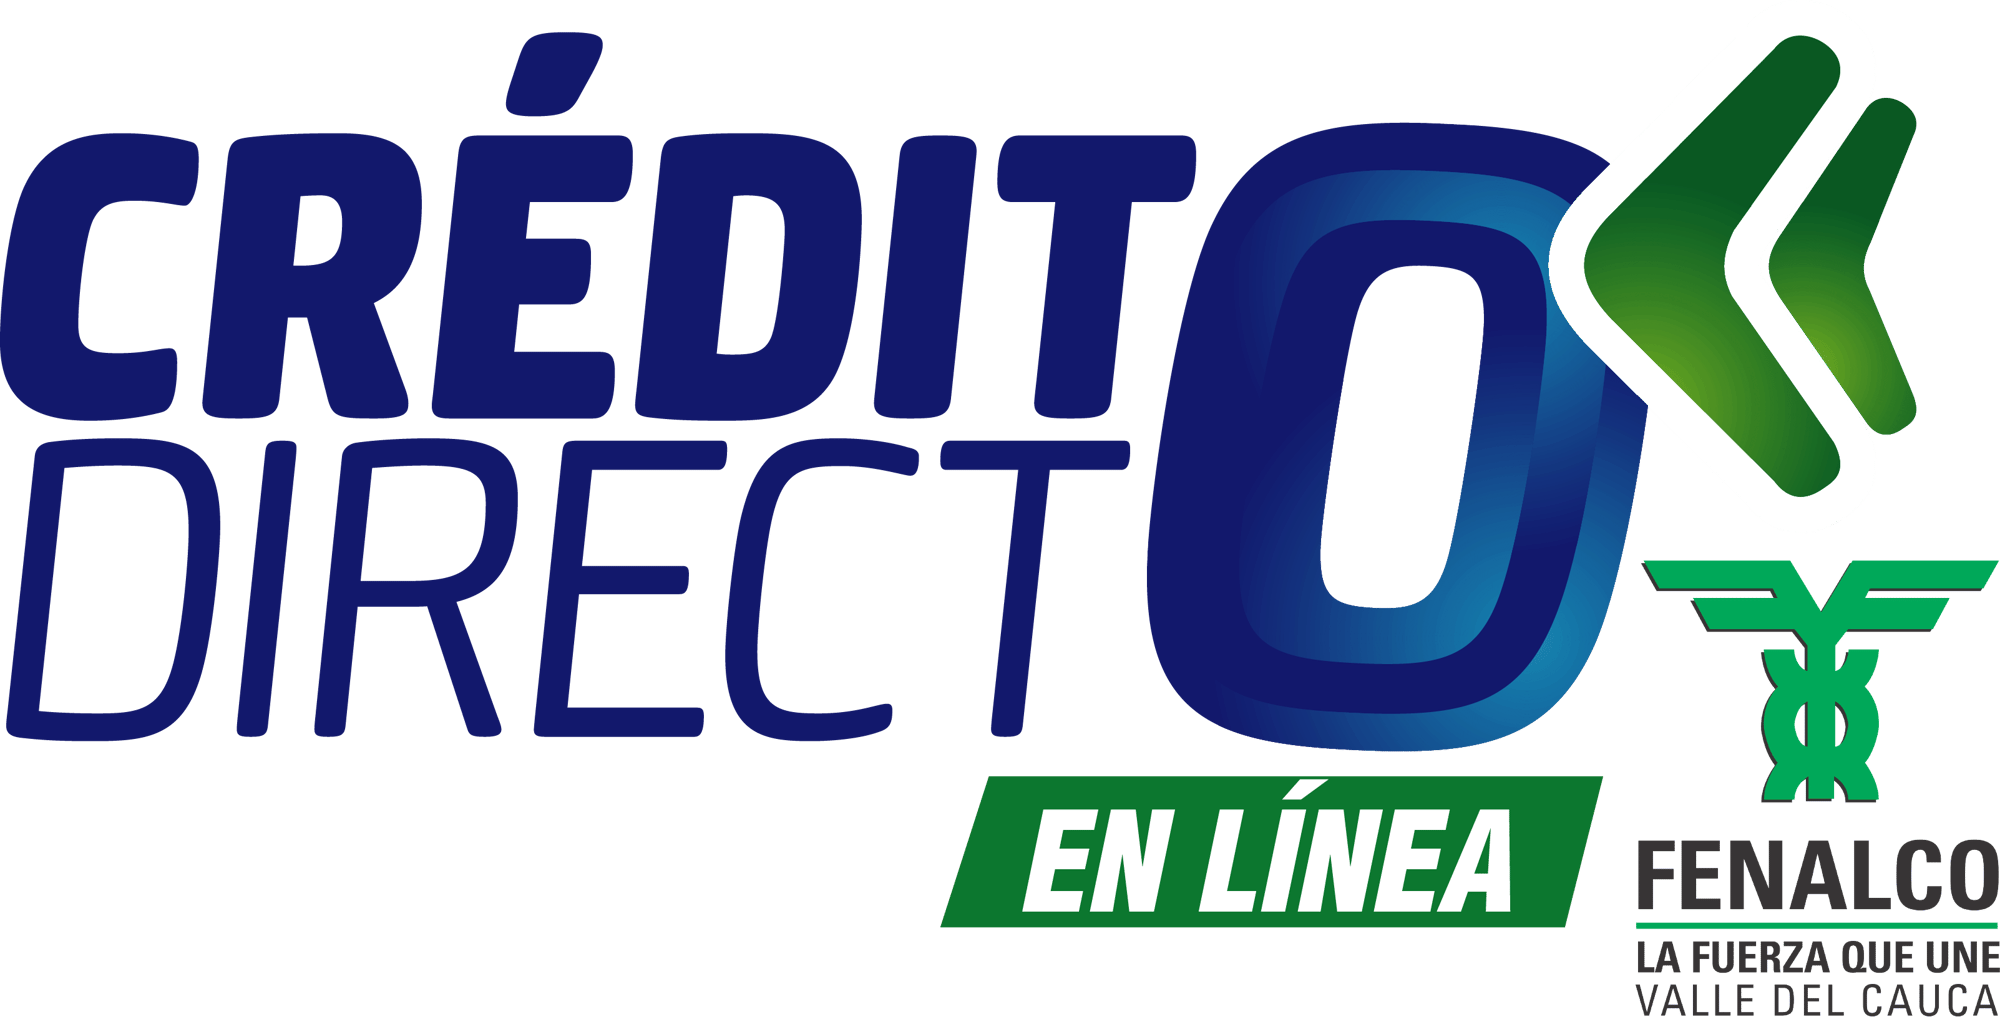 CREDITO_Directo_Fenalco